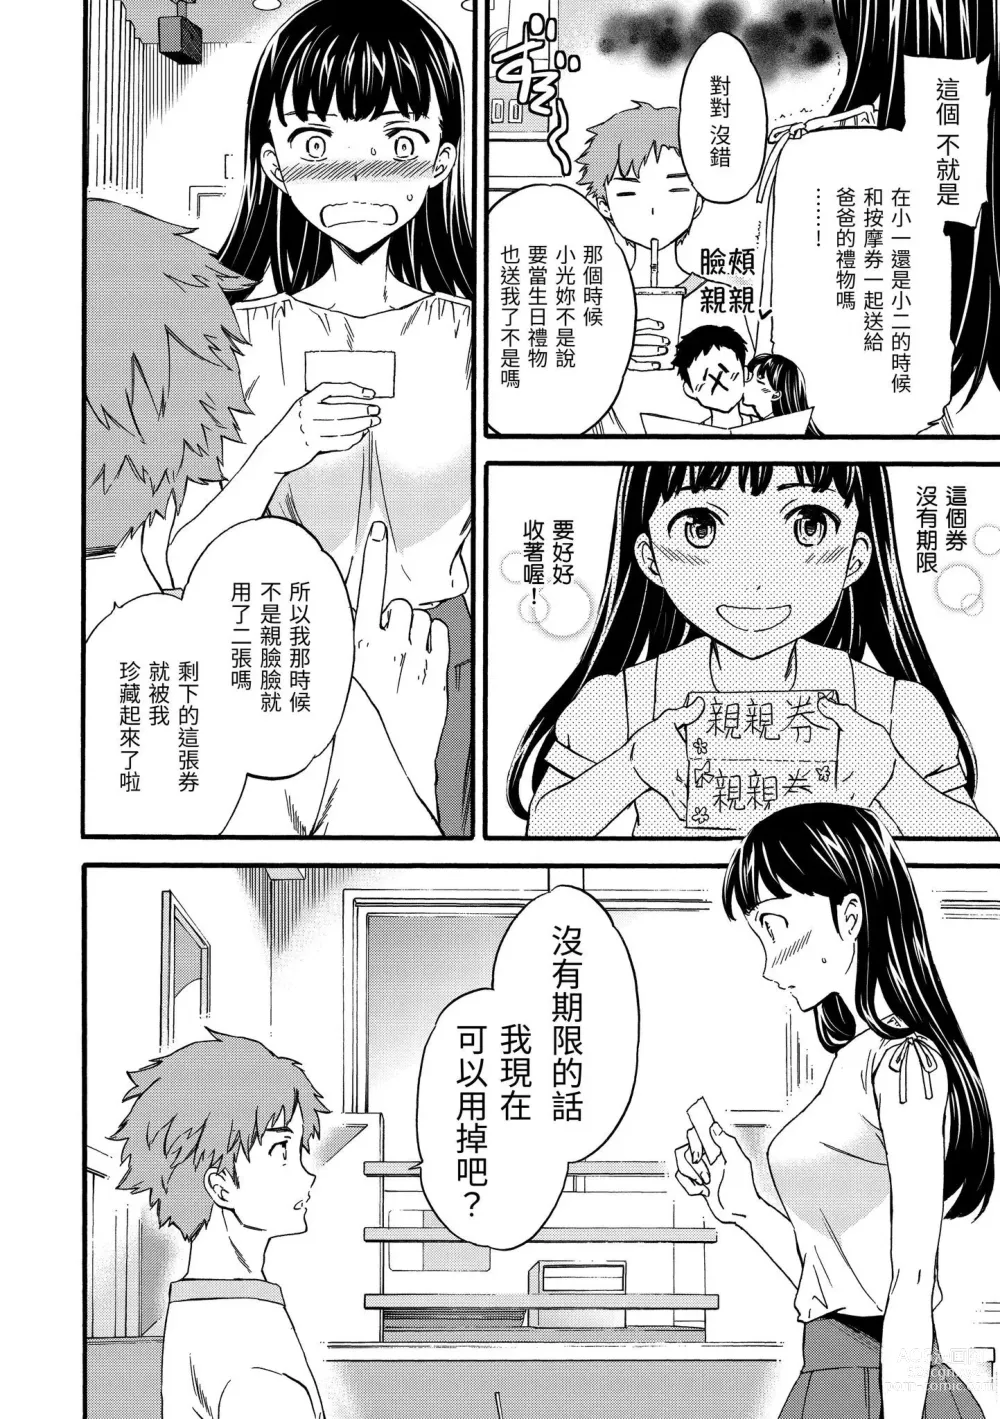 Page 25 of manga 柔情泥濘